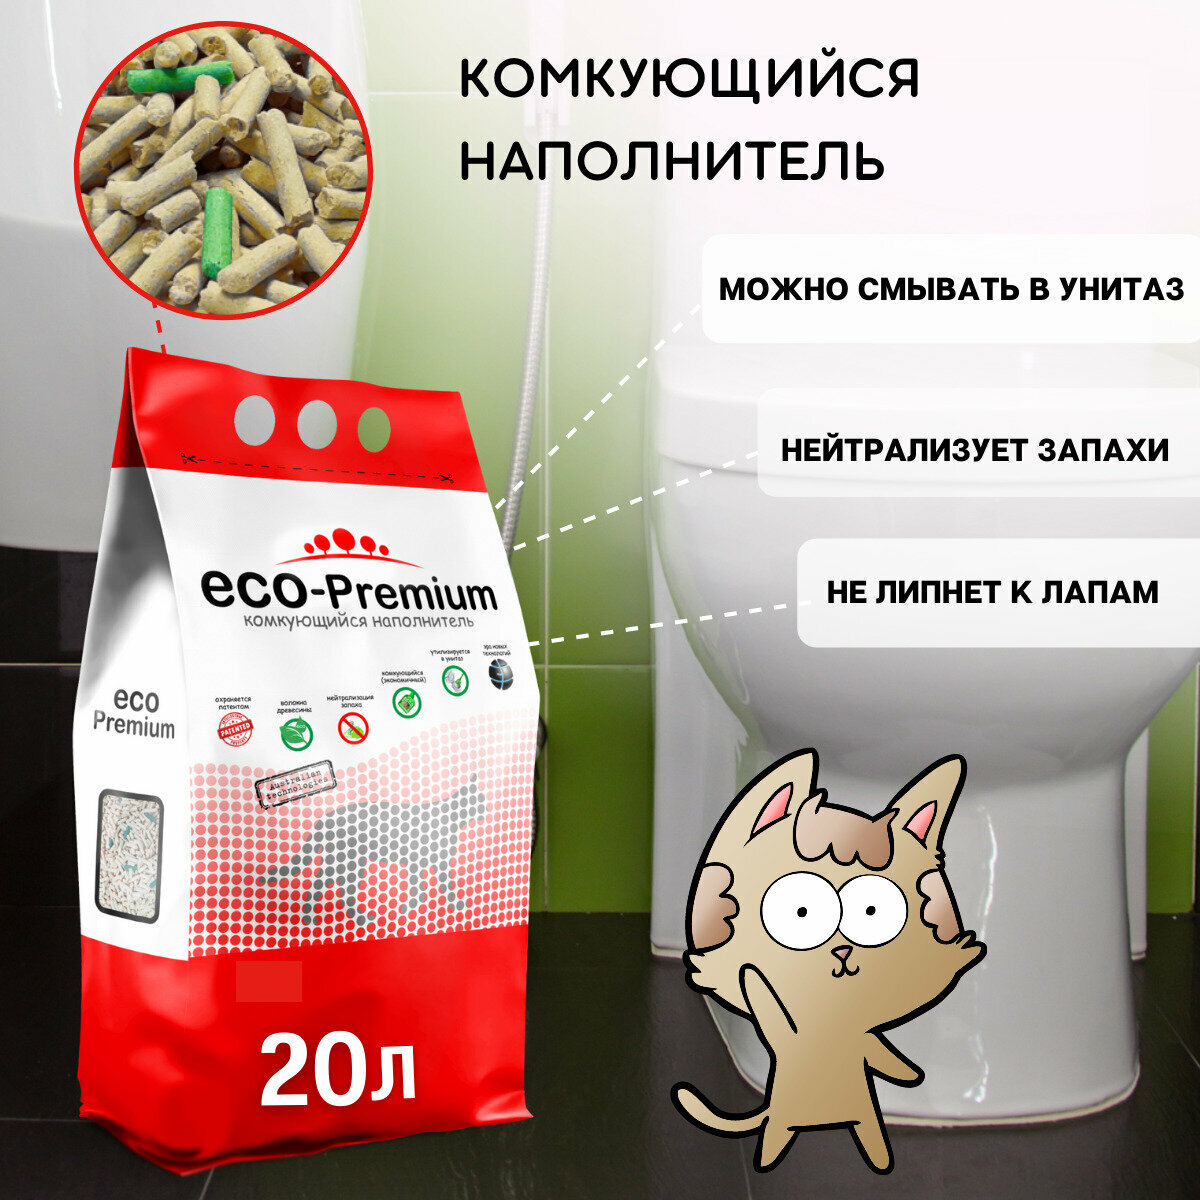 Наполнитель комкующийся ECO-Premium, 1.9 кг - фото №5